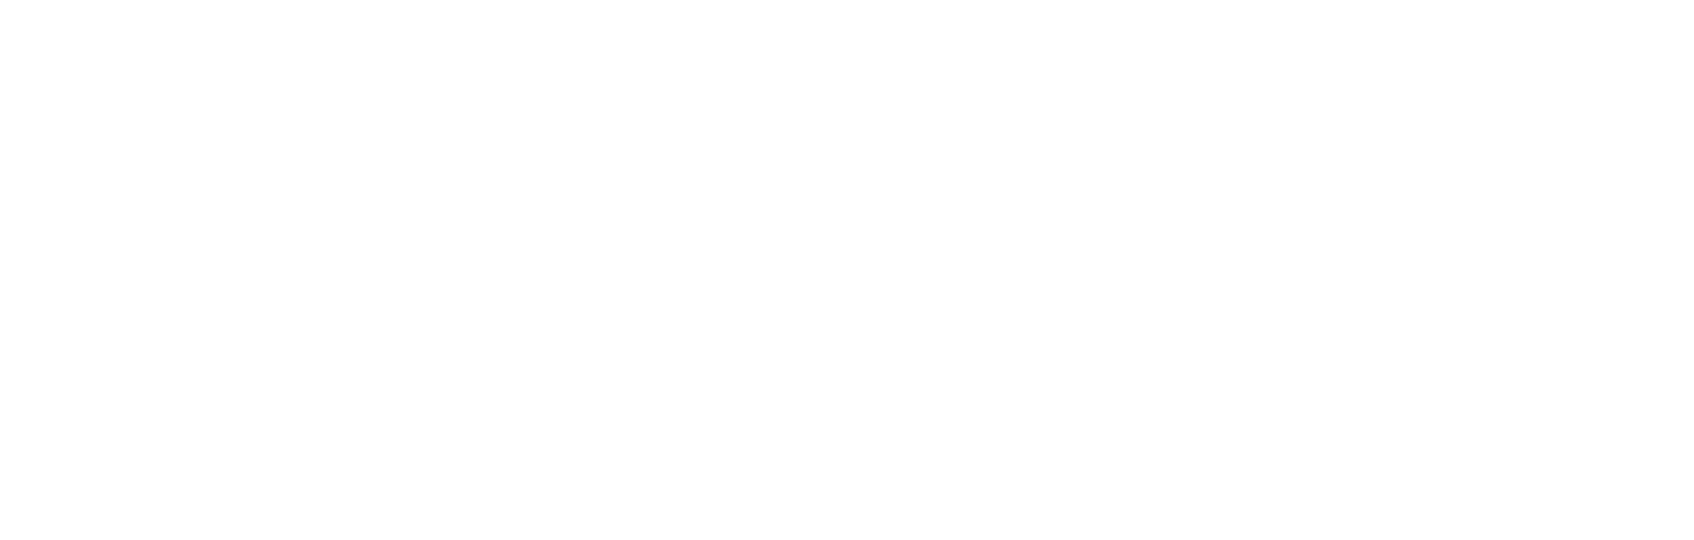 Allbirds logo grand pour les fonds sombres (PNG transparent)